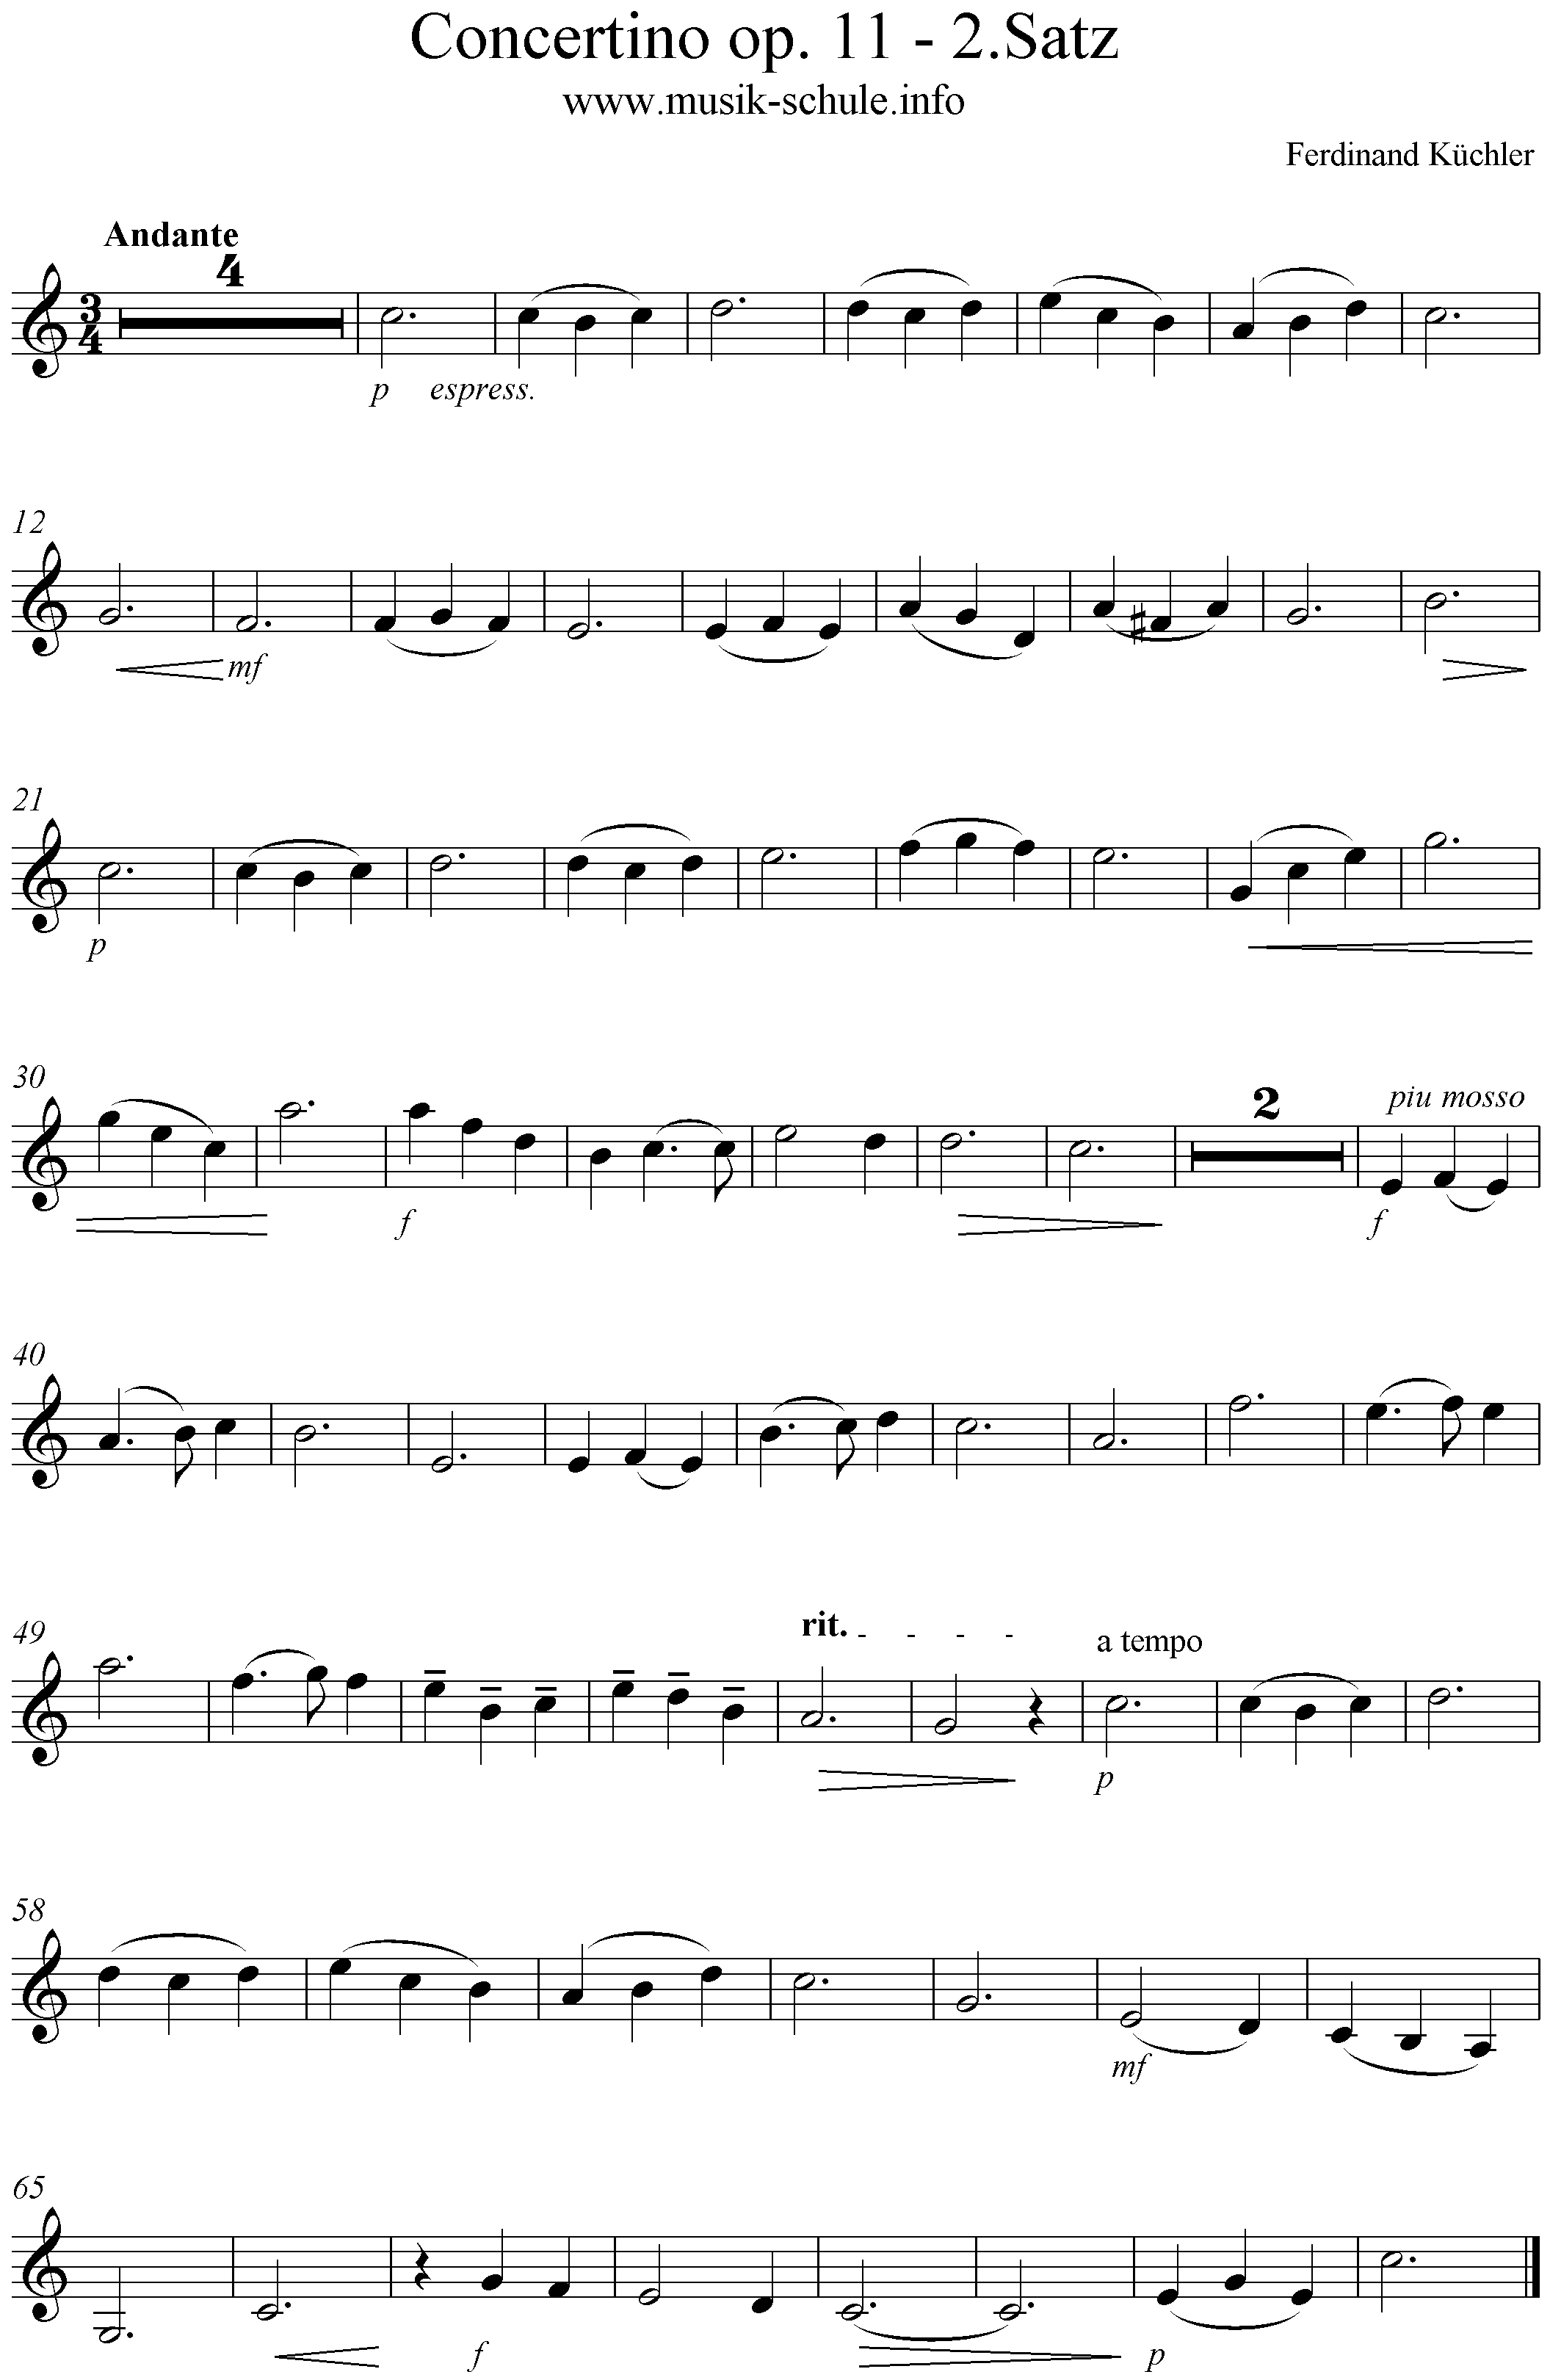 Noten für Violine - Küchler op.11 2.satz